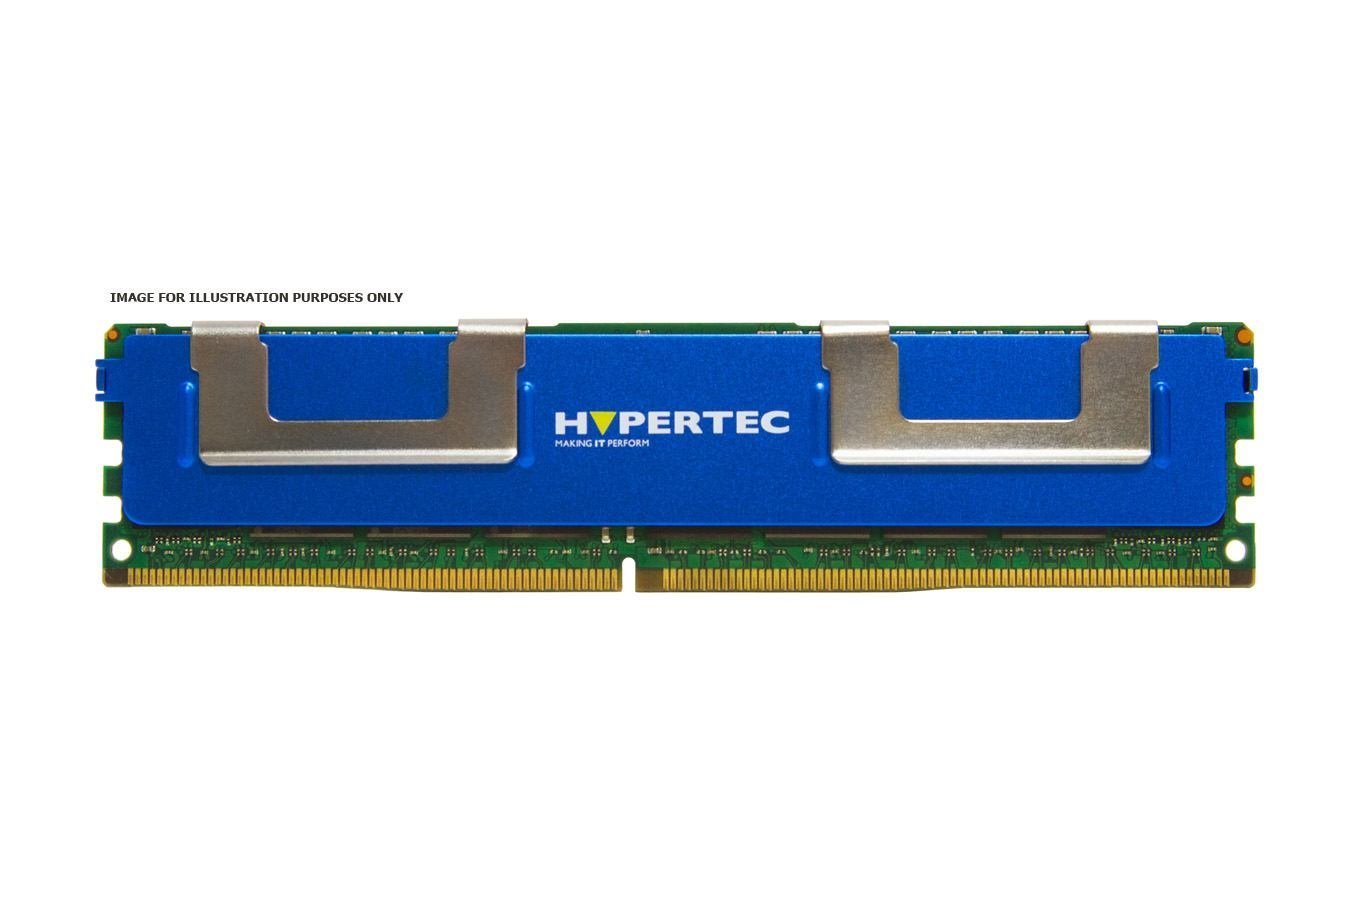 Hypertec 500205-071-HY Memory Module 8 GB DDR3 1333 MHz Ecc (A HP Equivalent 8 GB Registered Ecc DDR3 Sdram - Dimm 240-Pin 1333 MHz [ PC3-10600 ]Legacy [1Year Warranty])